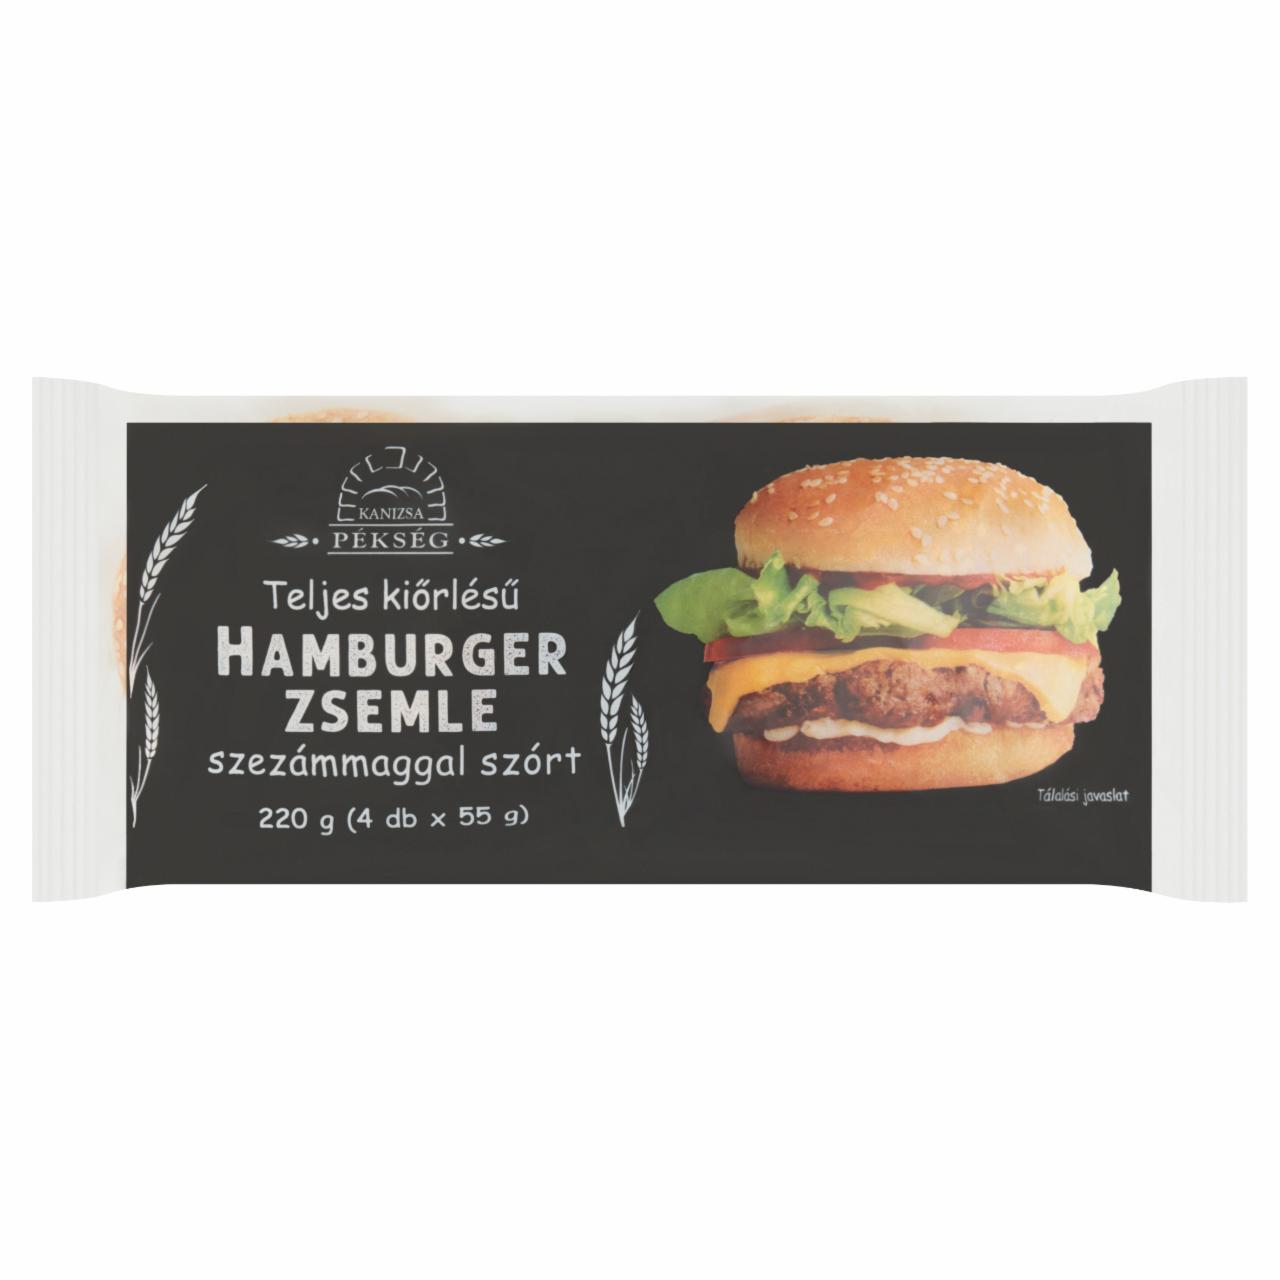 Képek - Kanizsa Pékség teljes kiőrlésű szezámmaggal szórt hamburger zsemle 4 db 220 g